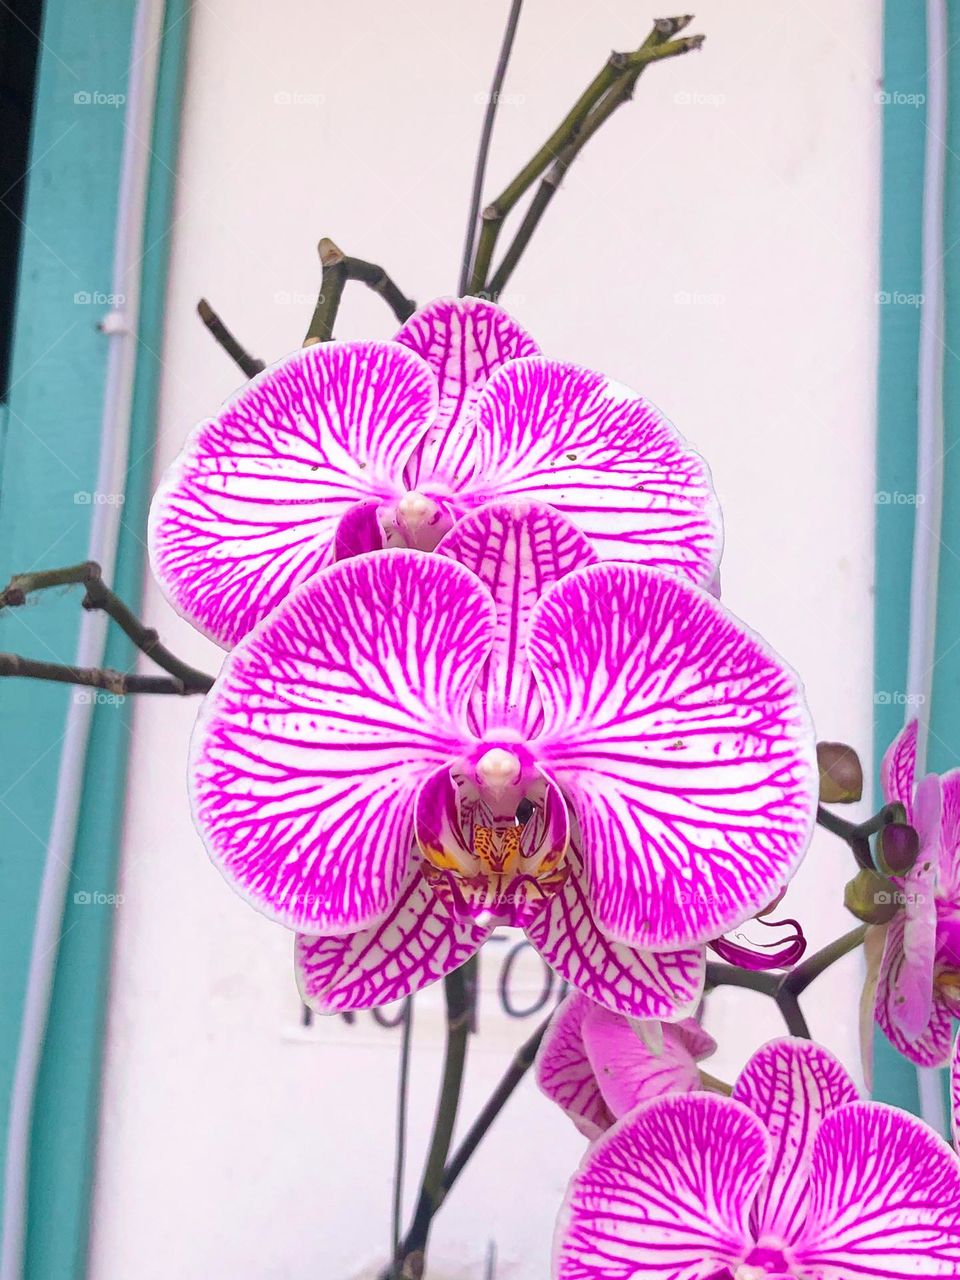 Orquídea. 